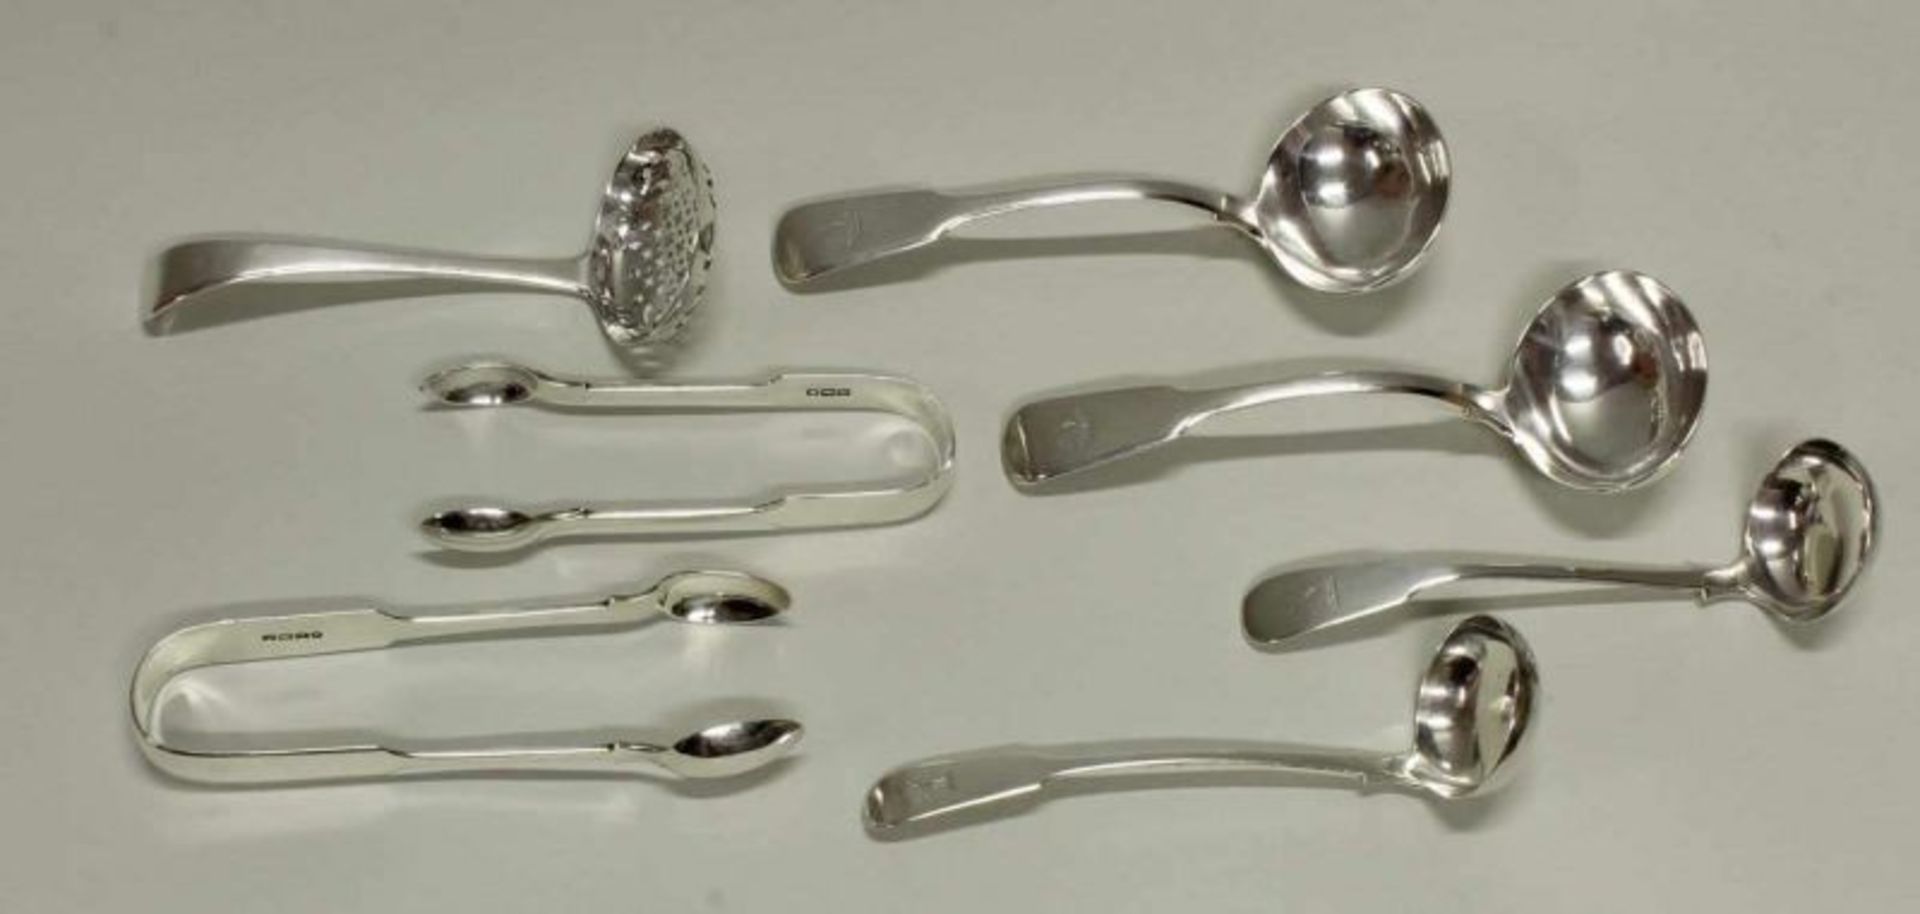 Streulöffel, 4 kleine Kellen, 2 Zuckerzangen, Silber 925, Edinburgh, 1836, 1840, London, 1823, 1901,